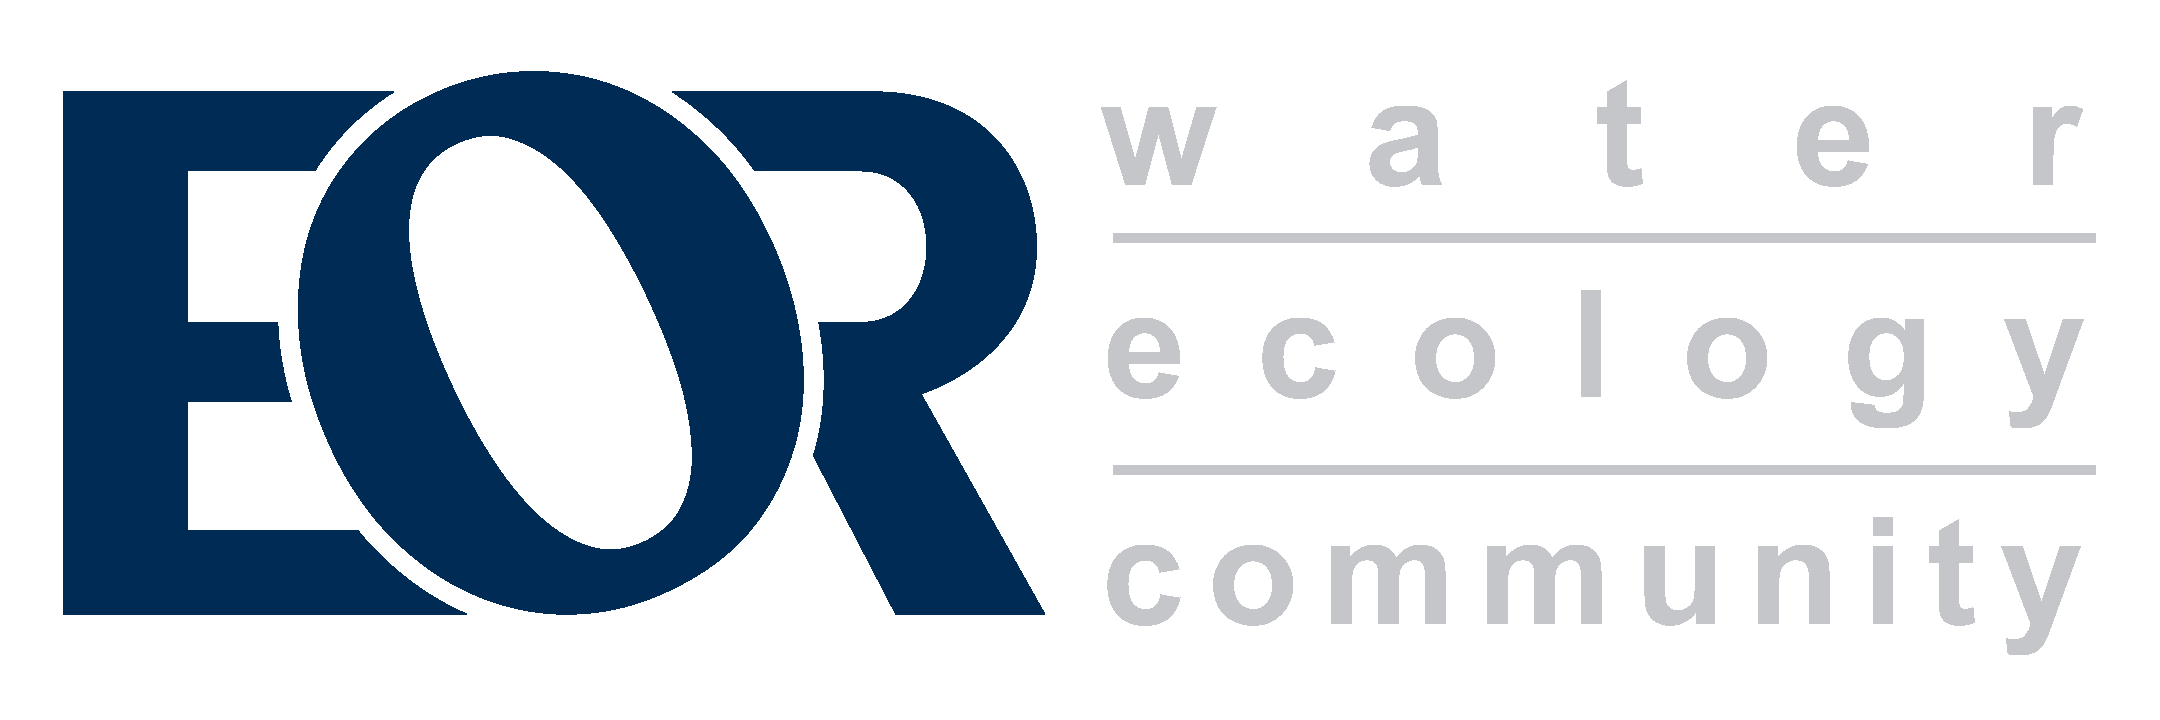 Emmons & Oliver Resources Inc. logo